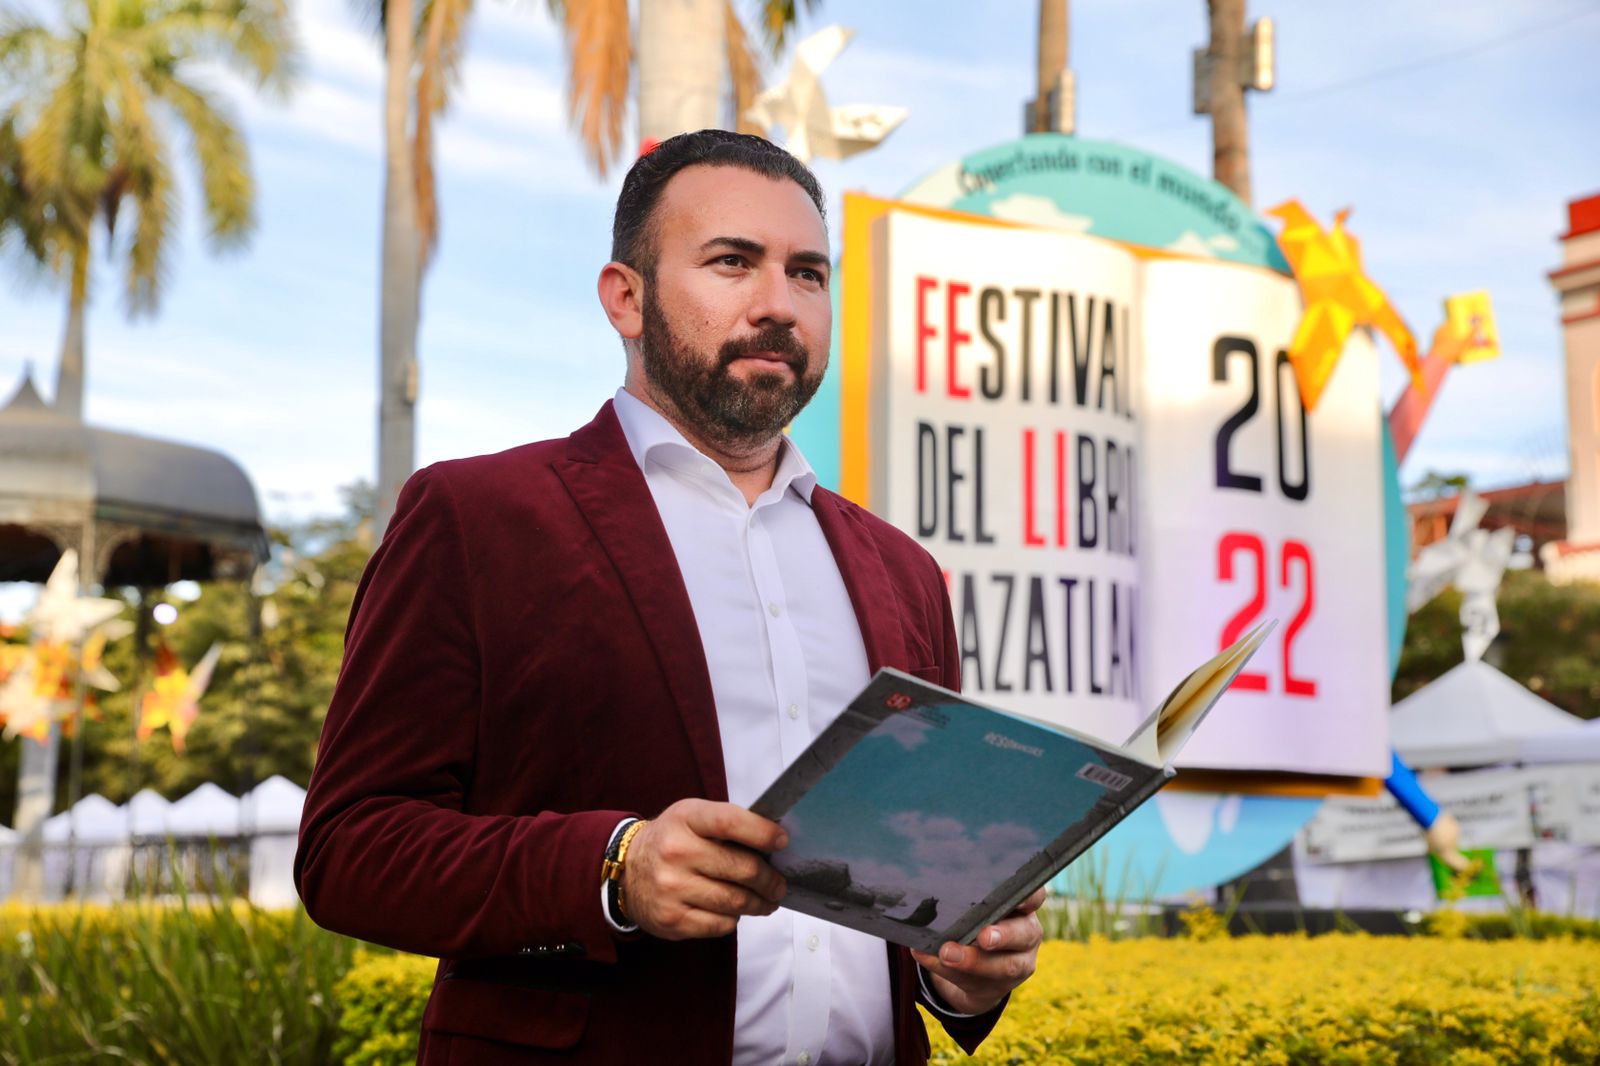 El Festival Del Libro Mazatlán rompe récords de venta y audiencia: José Ángel Tostado Quevedo